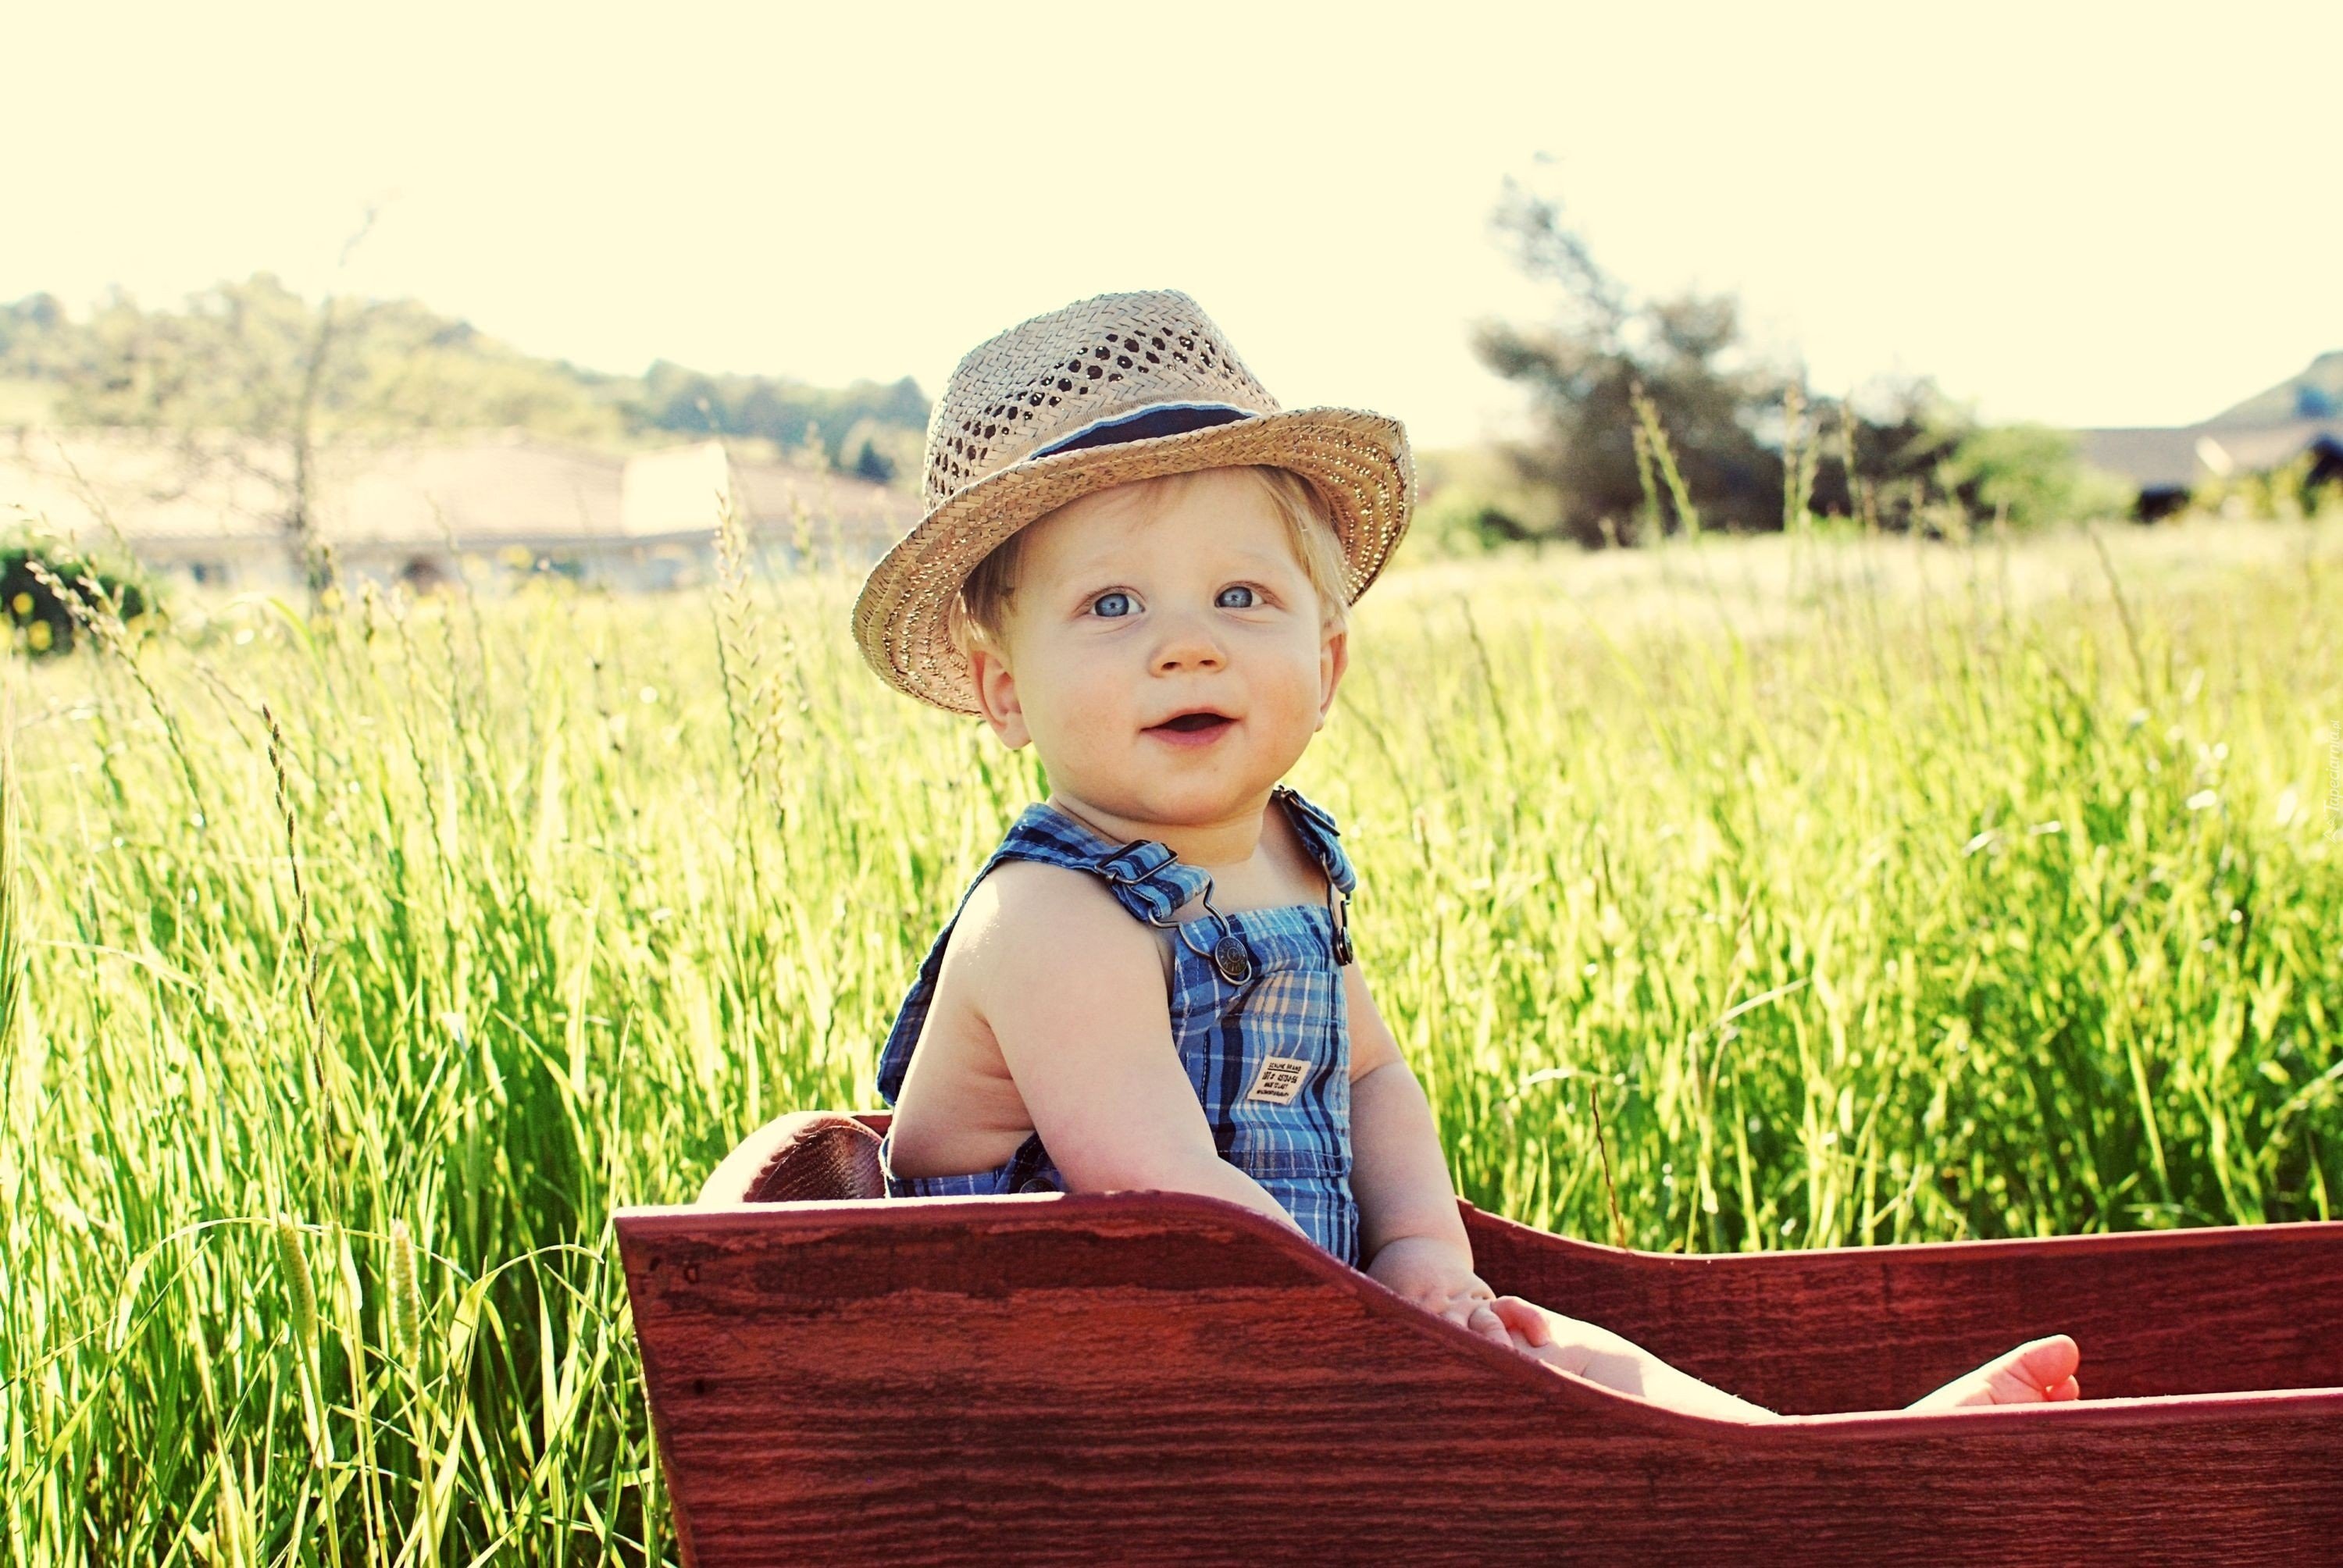 Детские фотографии. Шляпа для детей. Ребенок мальчик. Малыш в шляпе. Фотосессия мальчика на природе.